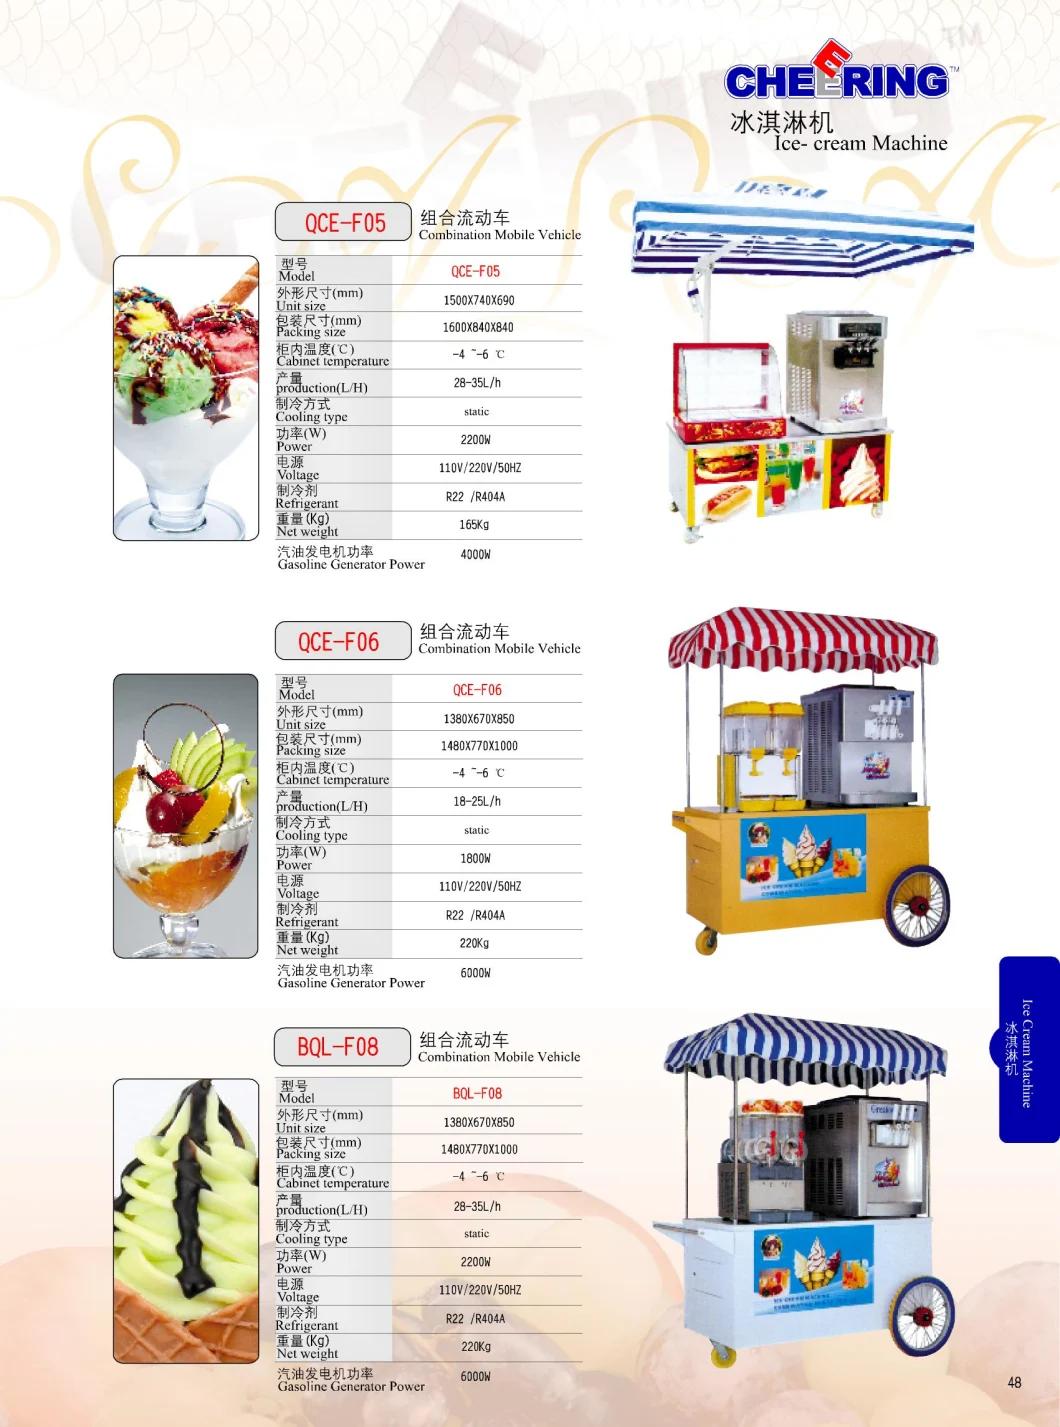 Commercial Ice Cream Machine Slush Machine with Handcart